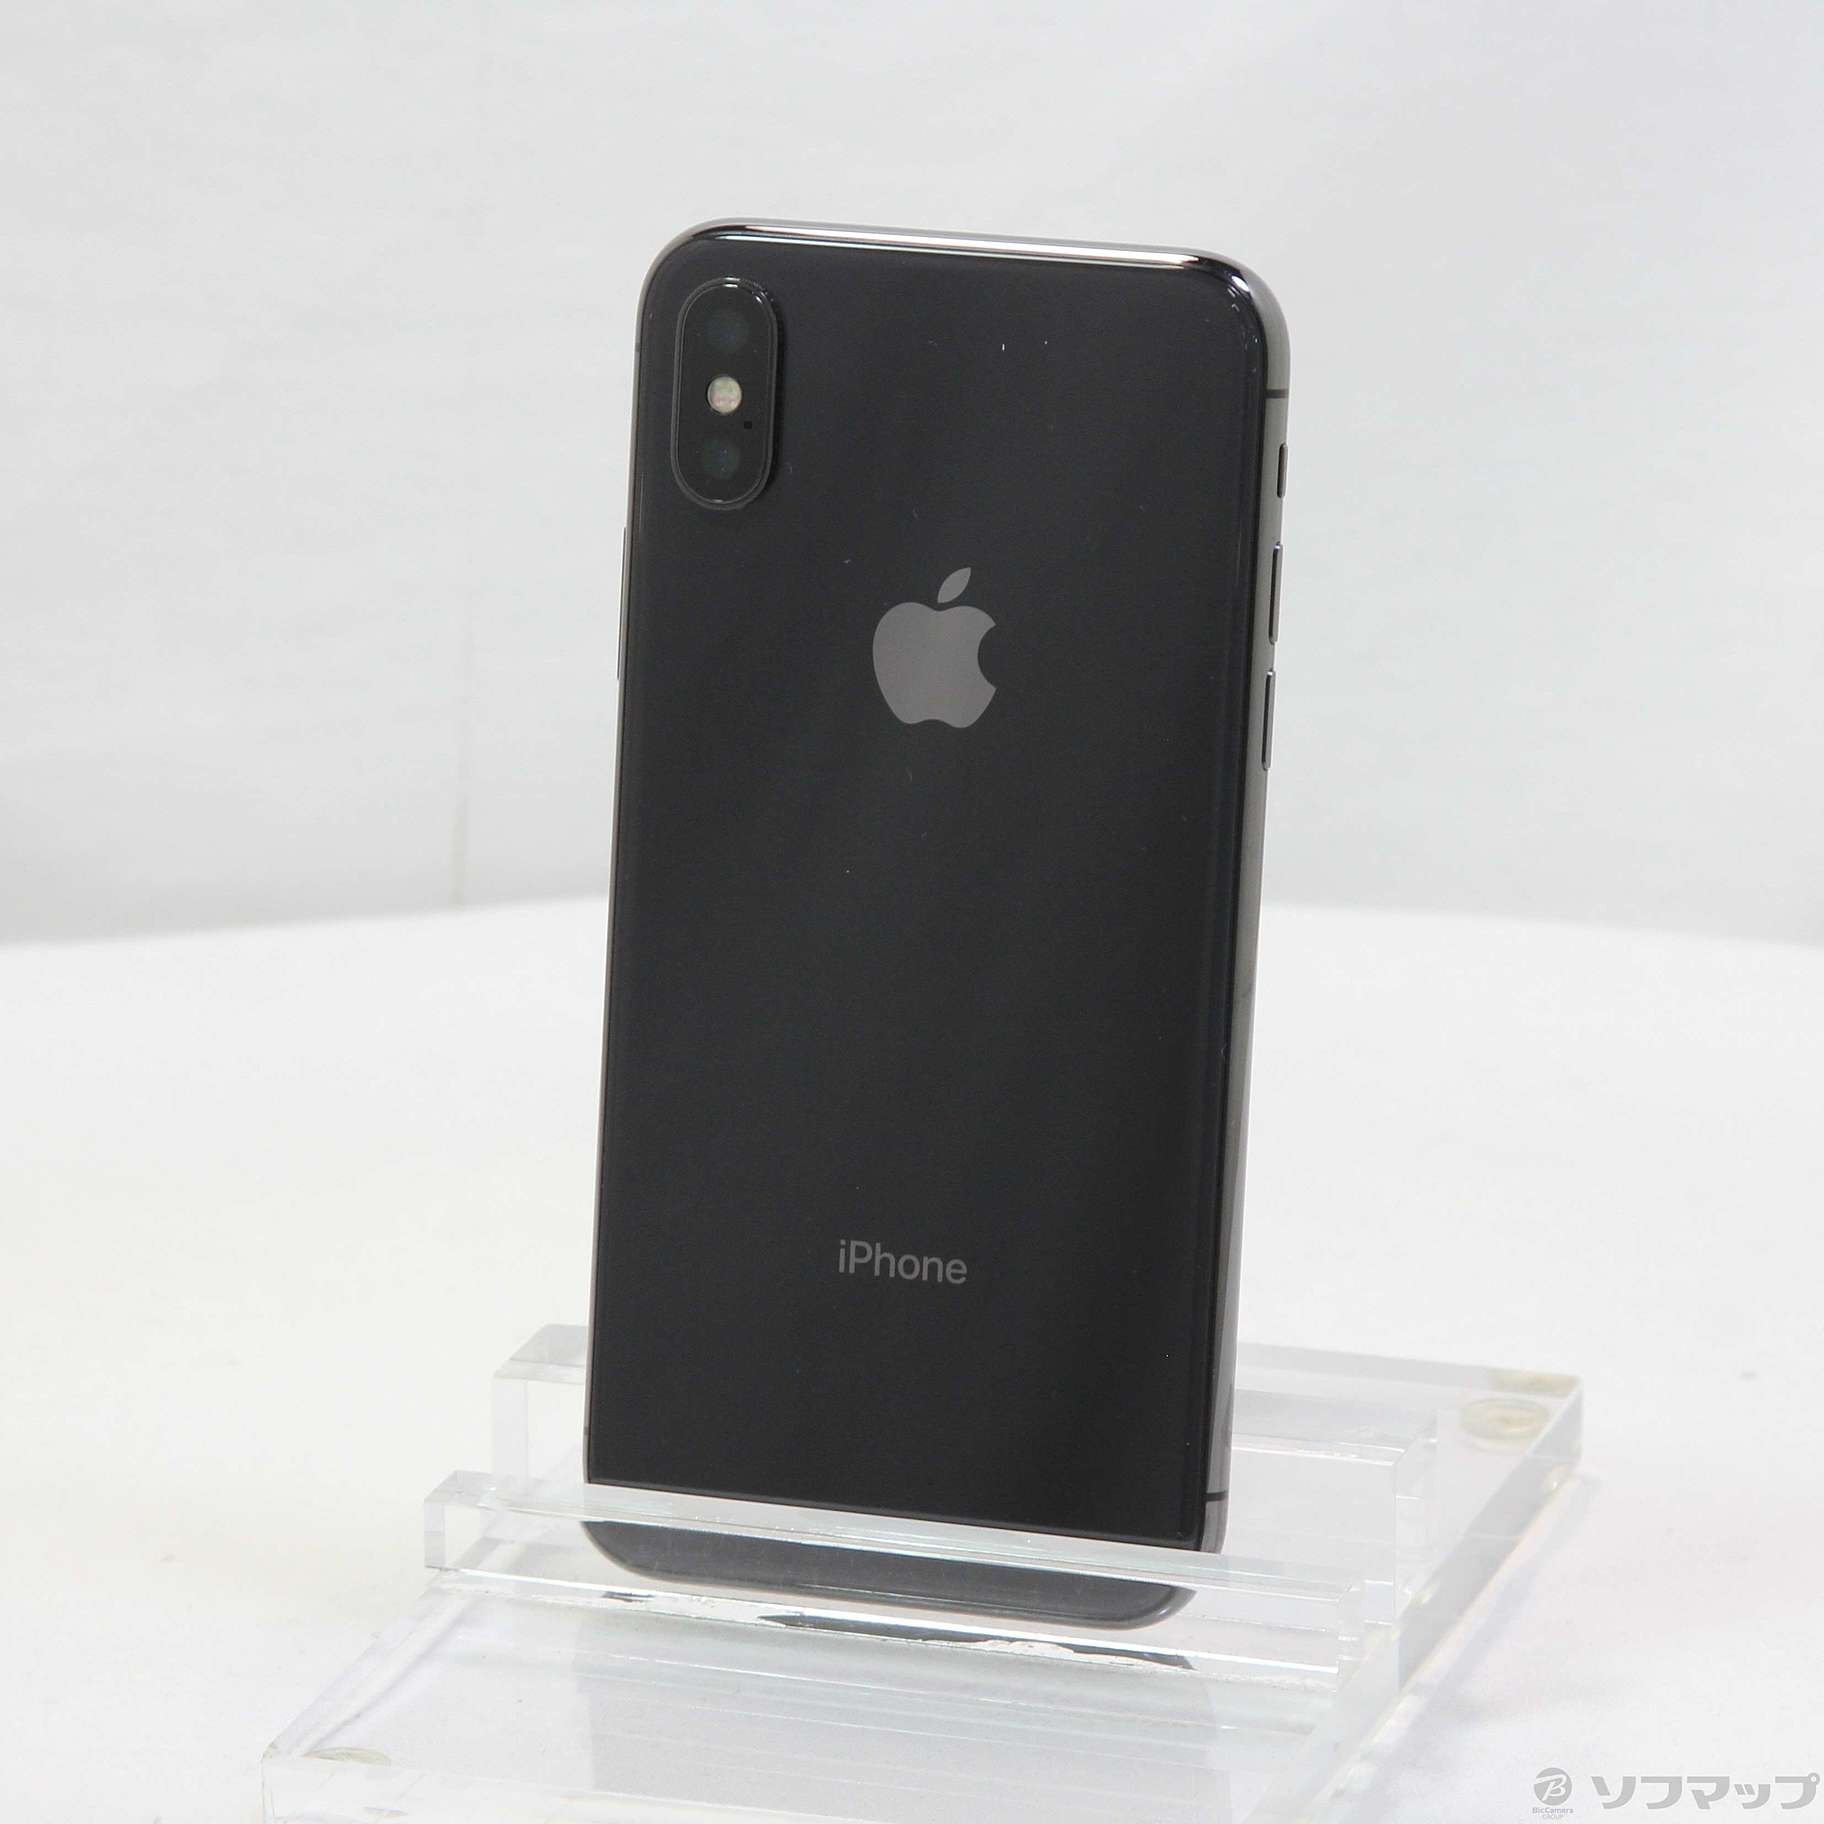 正規輸入代理店 iPhoneX Space Gray 256GB simフリー - スマートフォン 